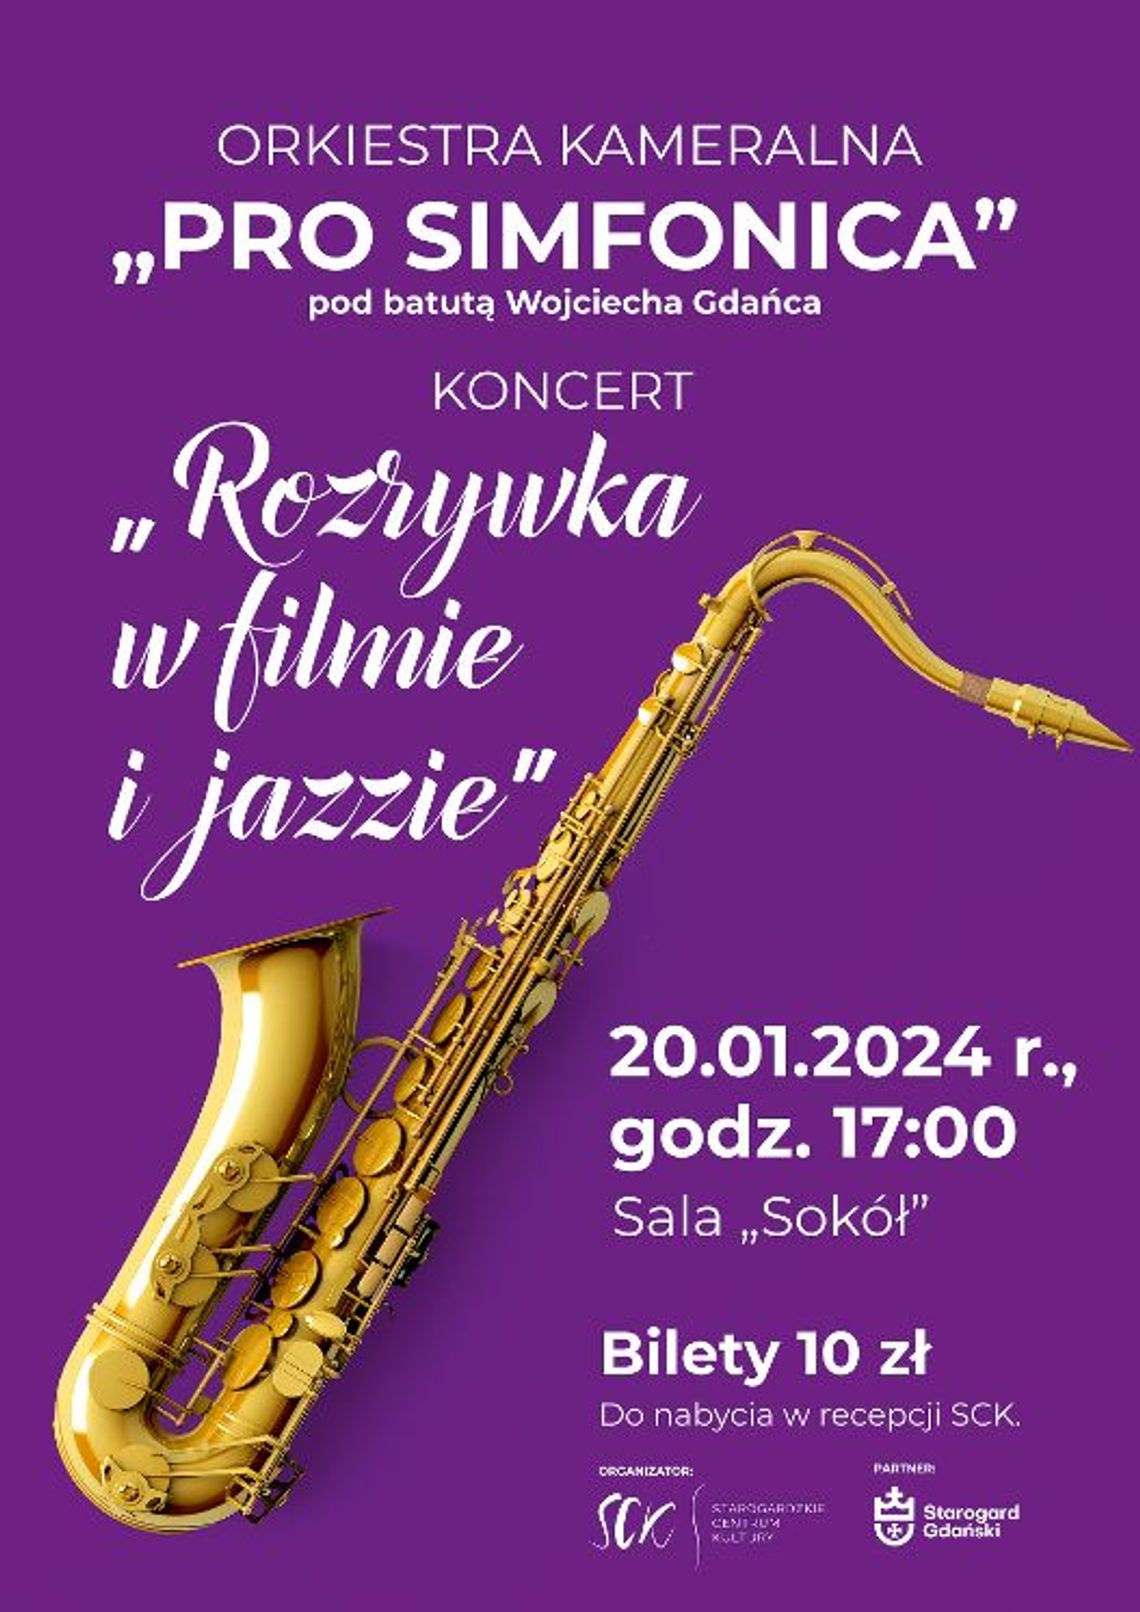 Pro Simfonica - rozrywka w filmie i jazzie. Koncert już 20 stycznia